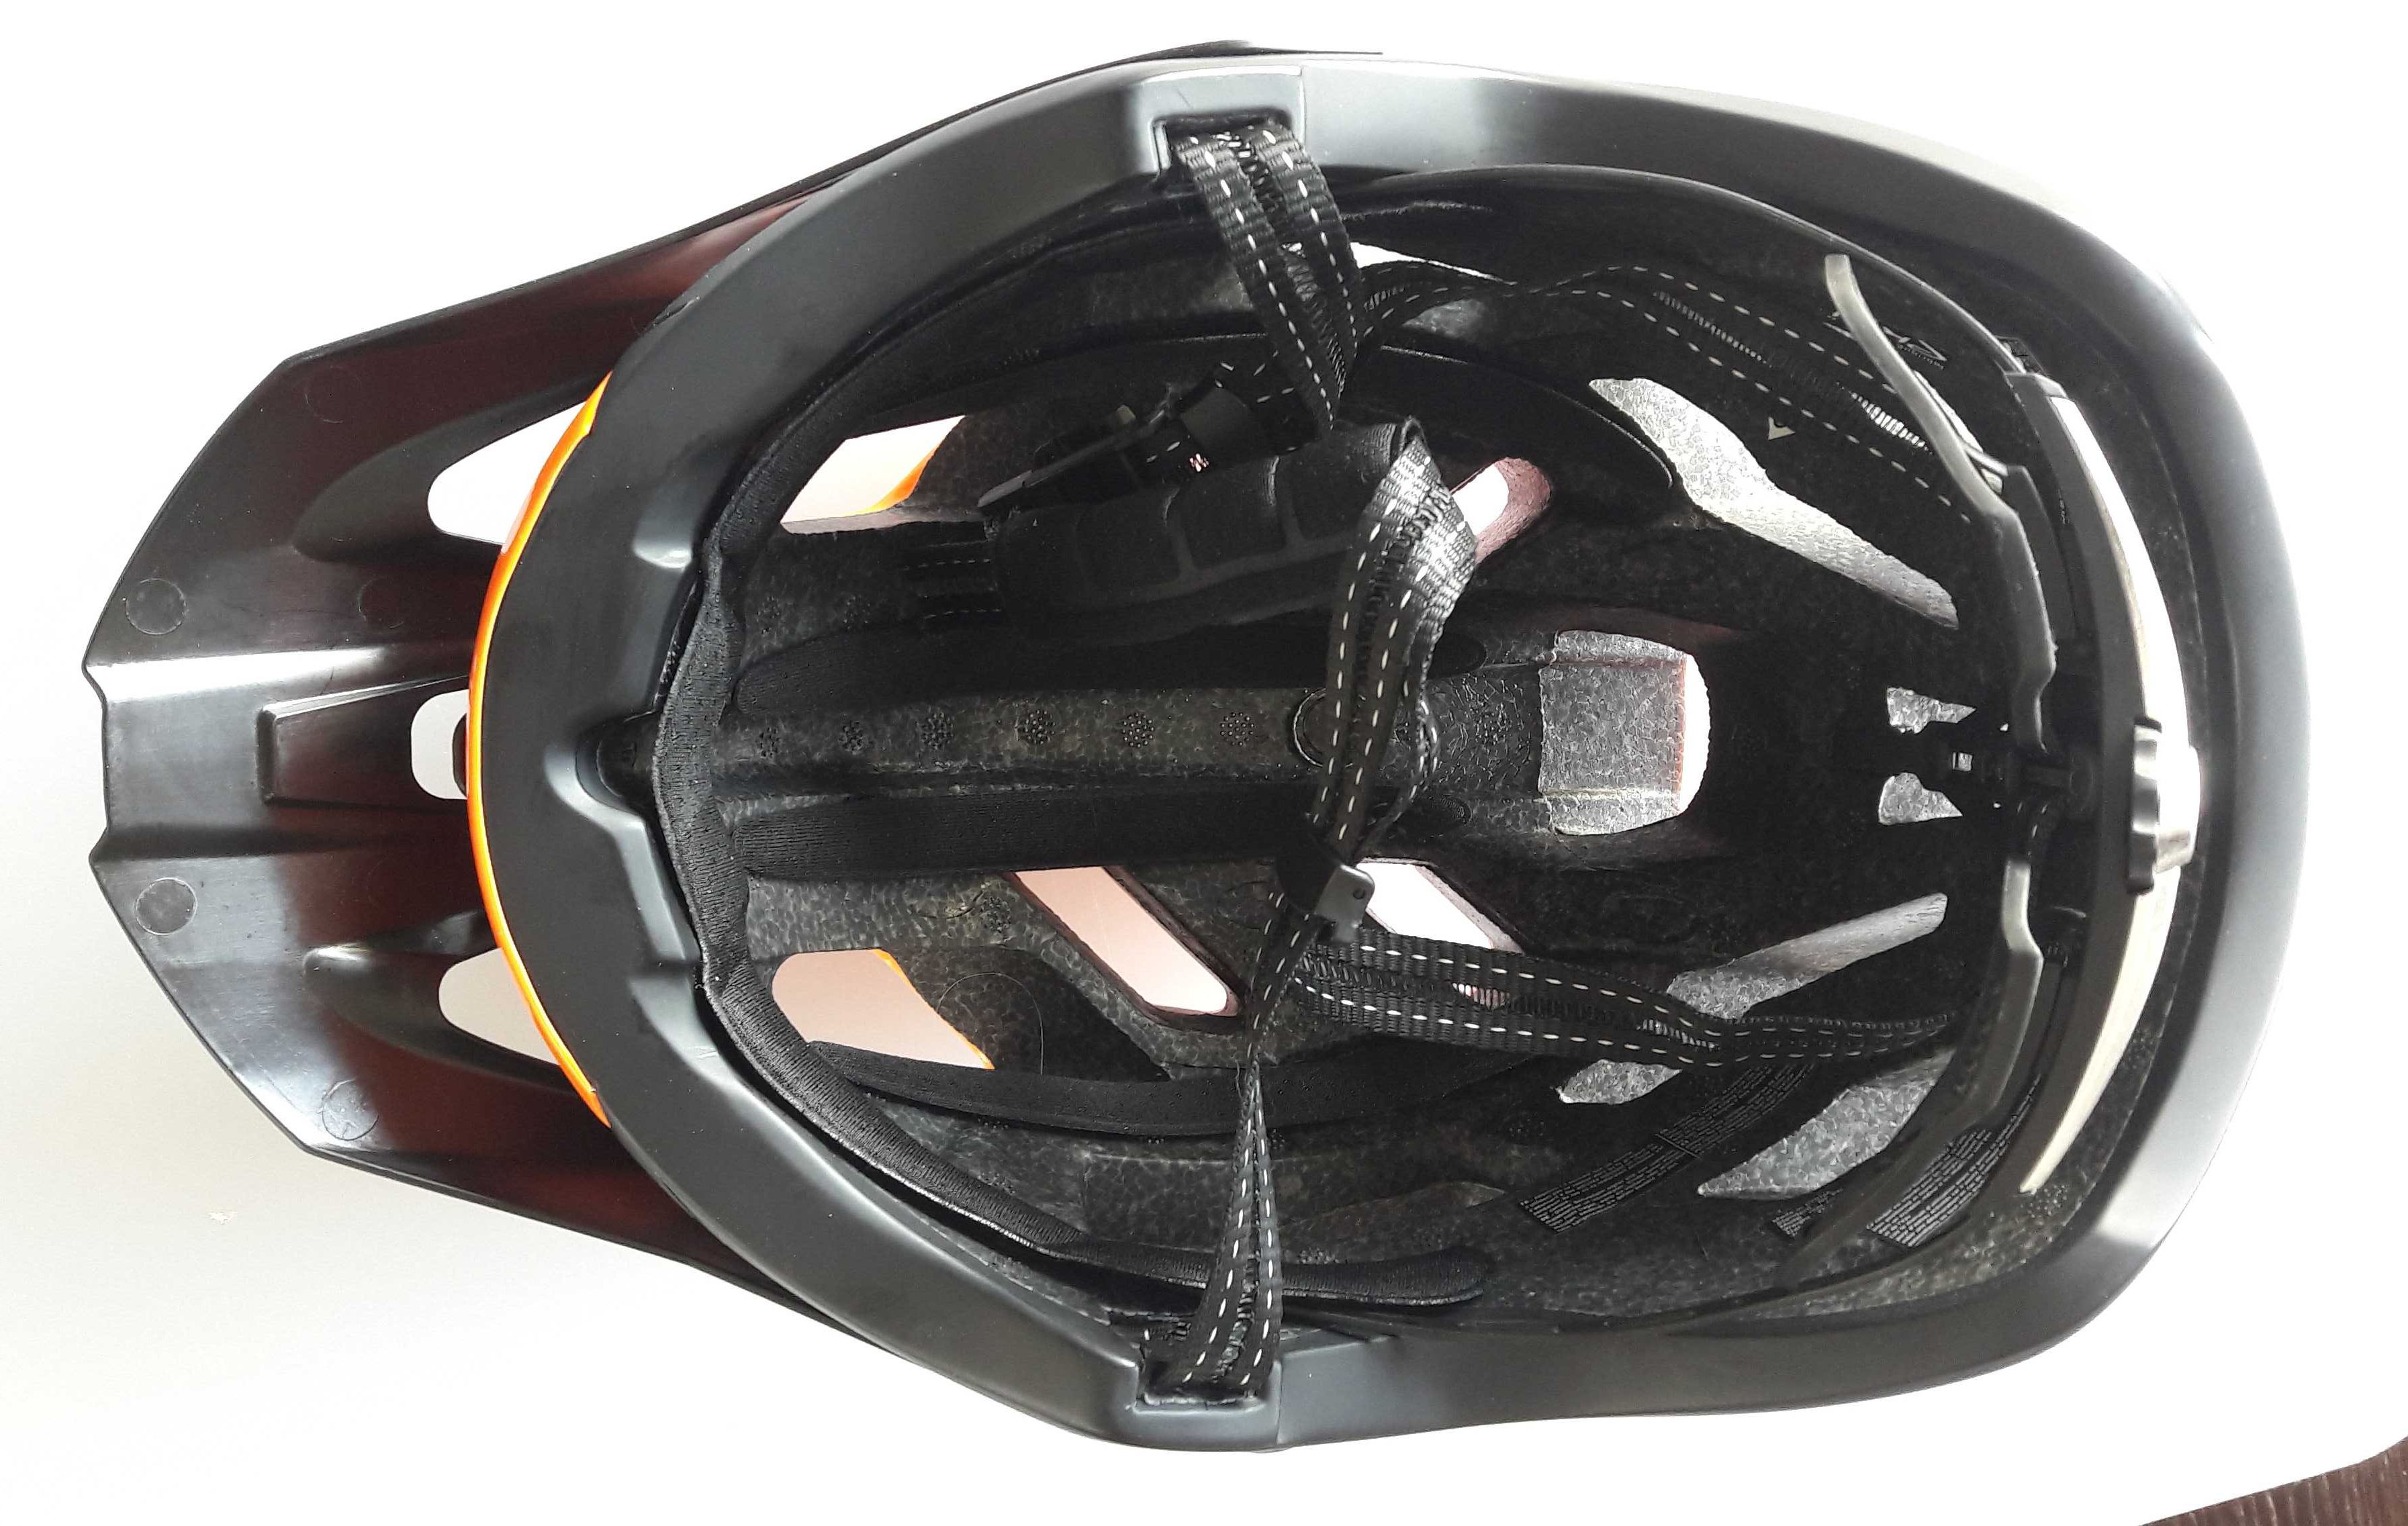 Kask rowerowy EKOI MTB TRAIL FOREST pomarańczowo-czarny L/XL 58-61 cm